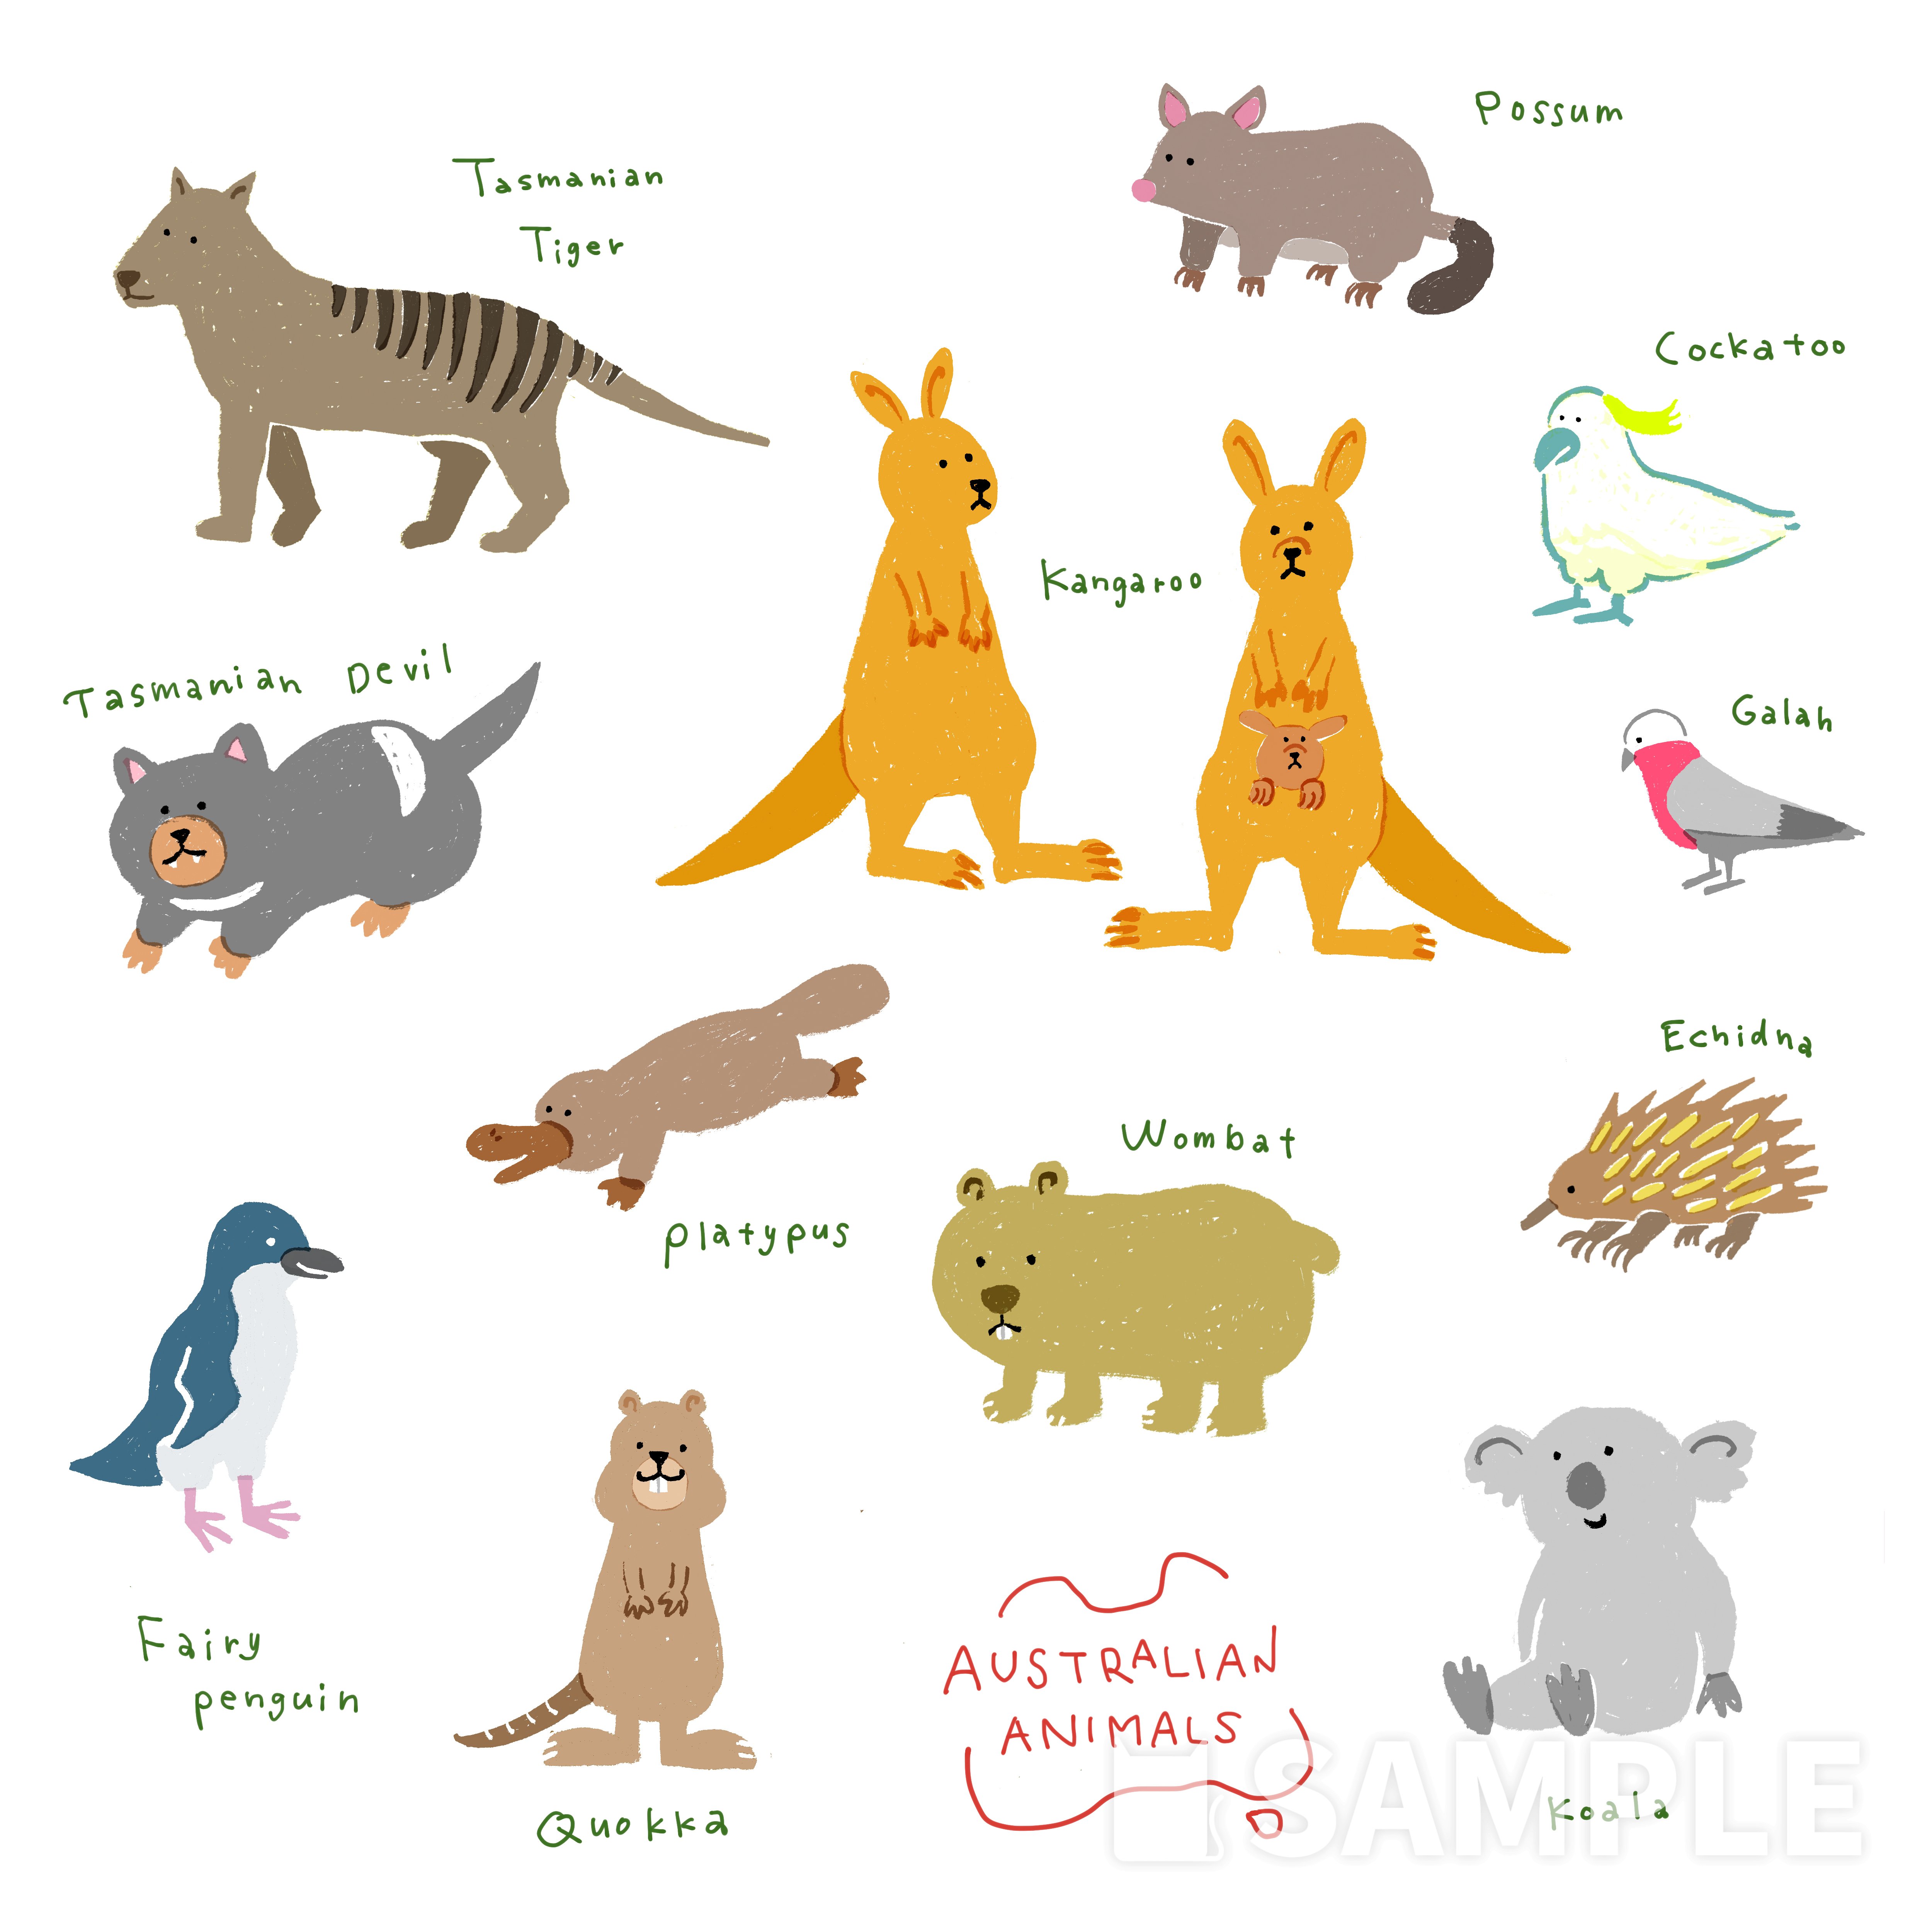 オーストラリアの動物たち イラスト制作依頼はタノムノ